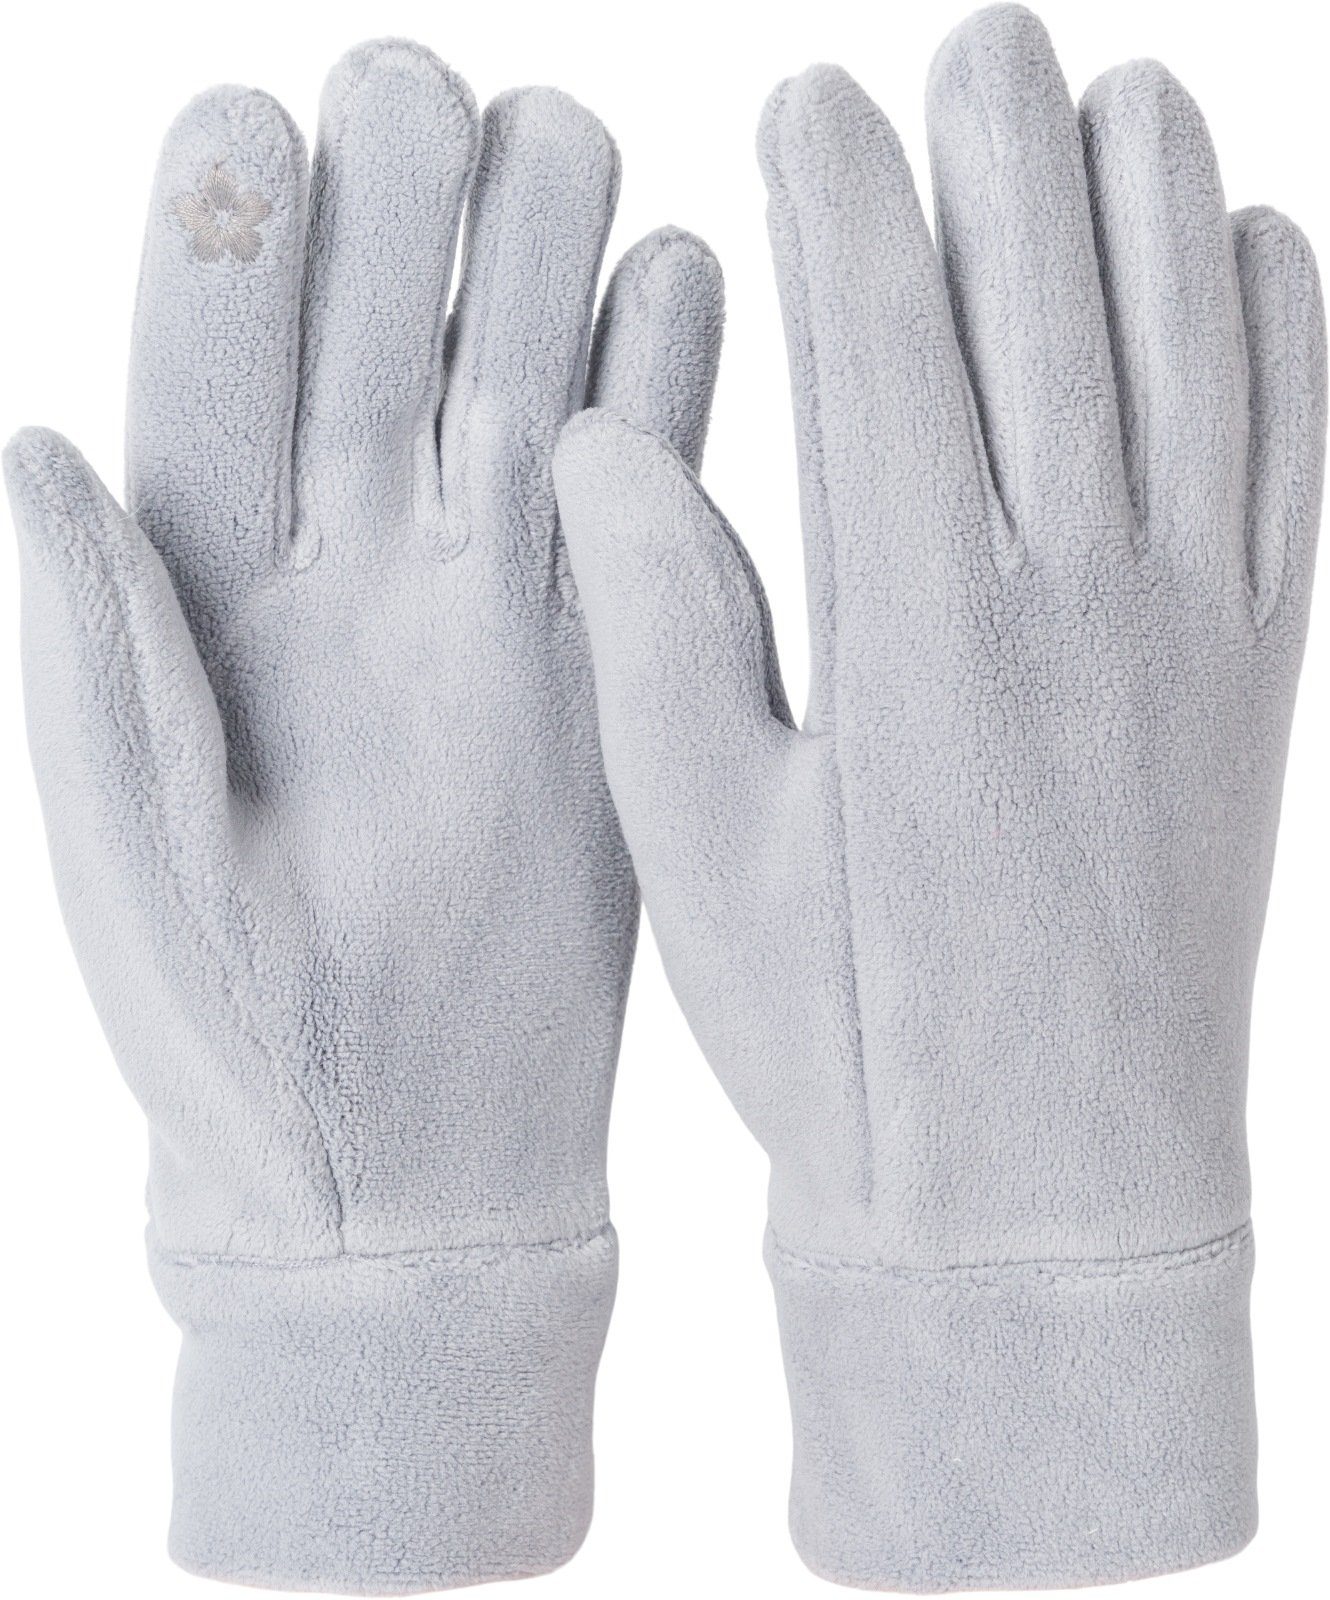 styleBREAKER Fleecehandschuhe Einfarbige Touchscreen Fleece Handschuhe Hellgrau | Fleecehandschuhe